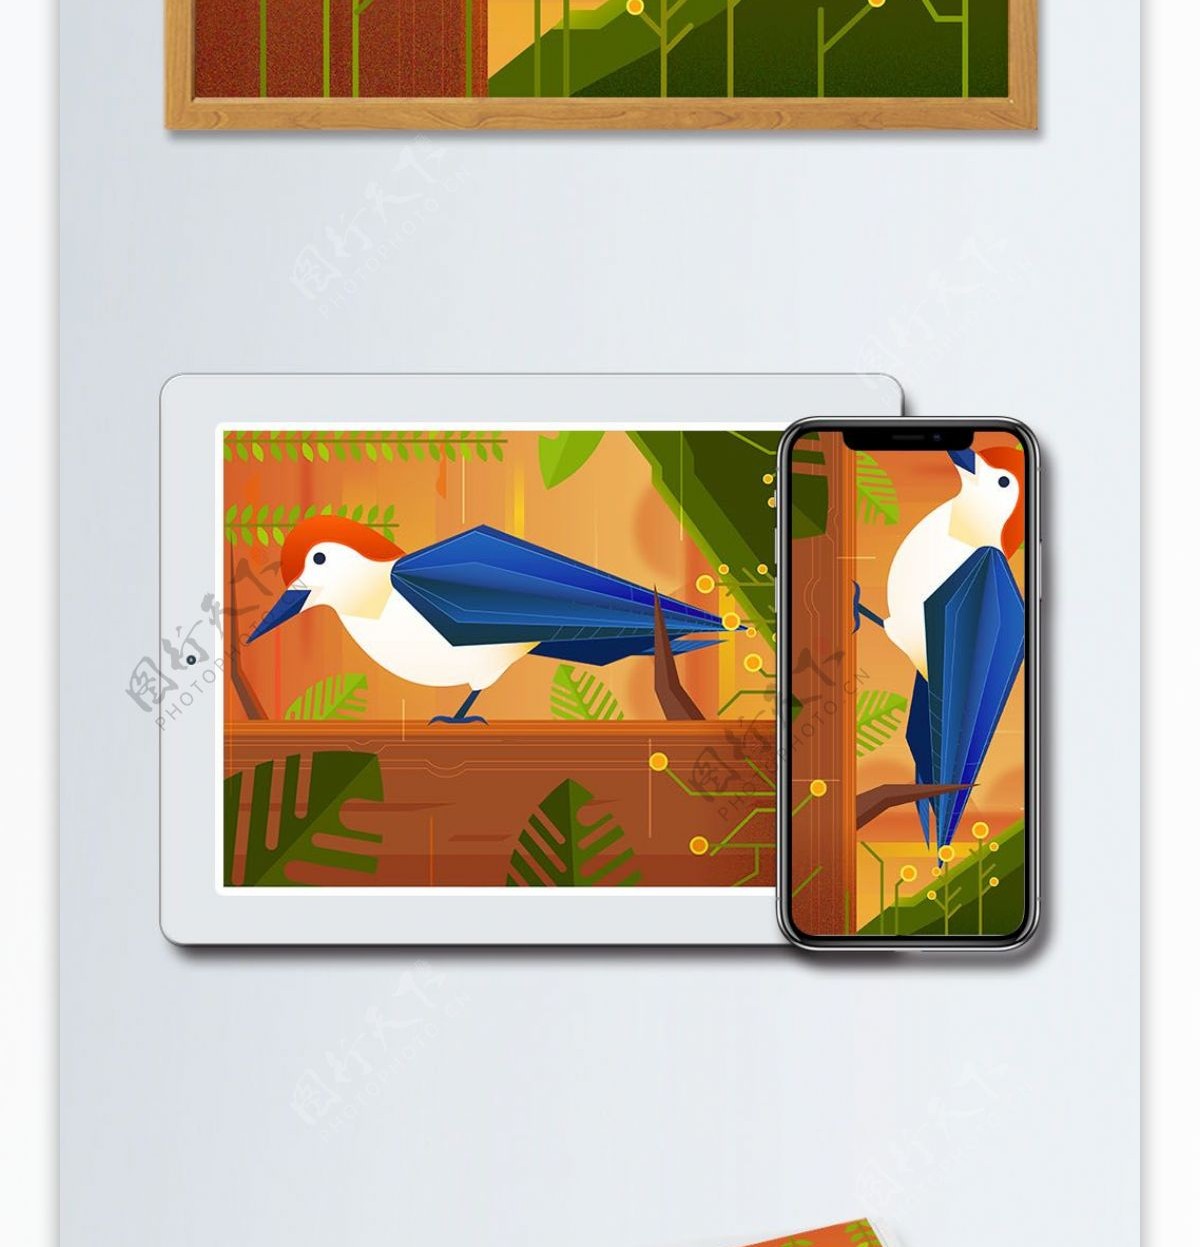 大自然动物森林黄昏下的啄木鸟矢量插画